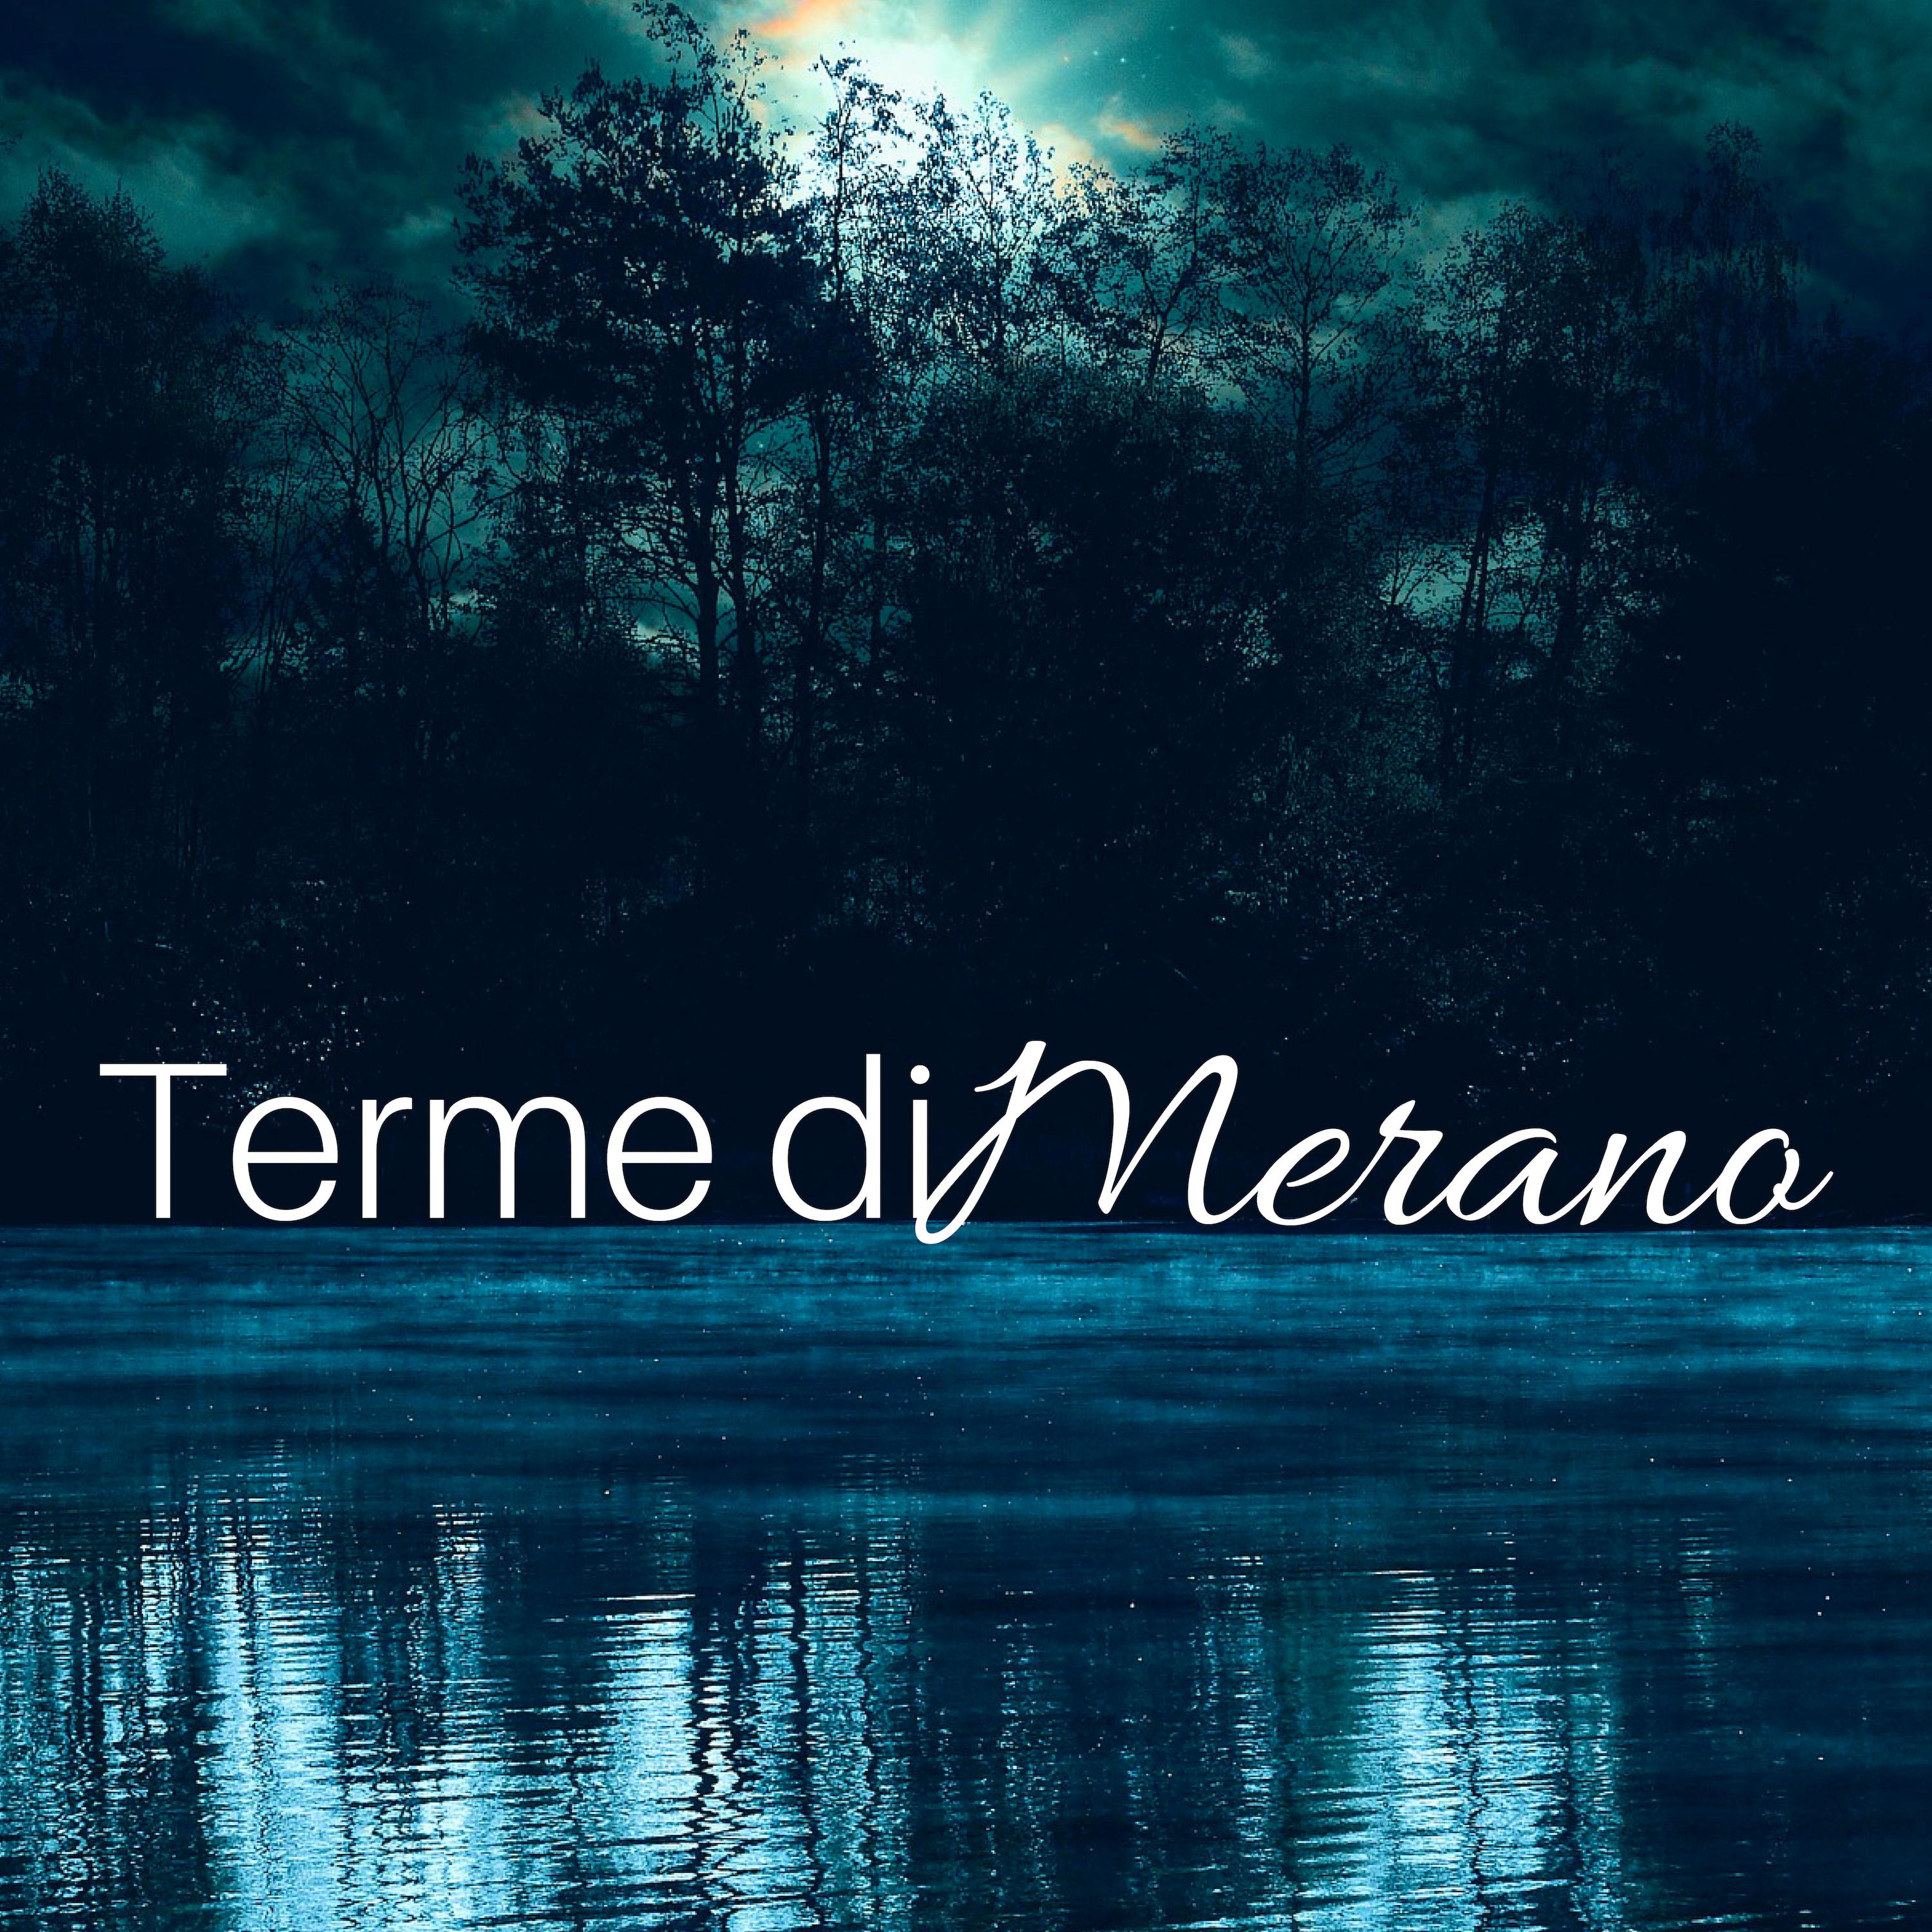 Terme di Merano 20 - Musiche Strumentali Rilassanti New Age per Spa, Massaggi, Meditazione, Rilassamento, Piscine Termali